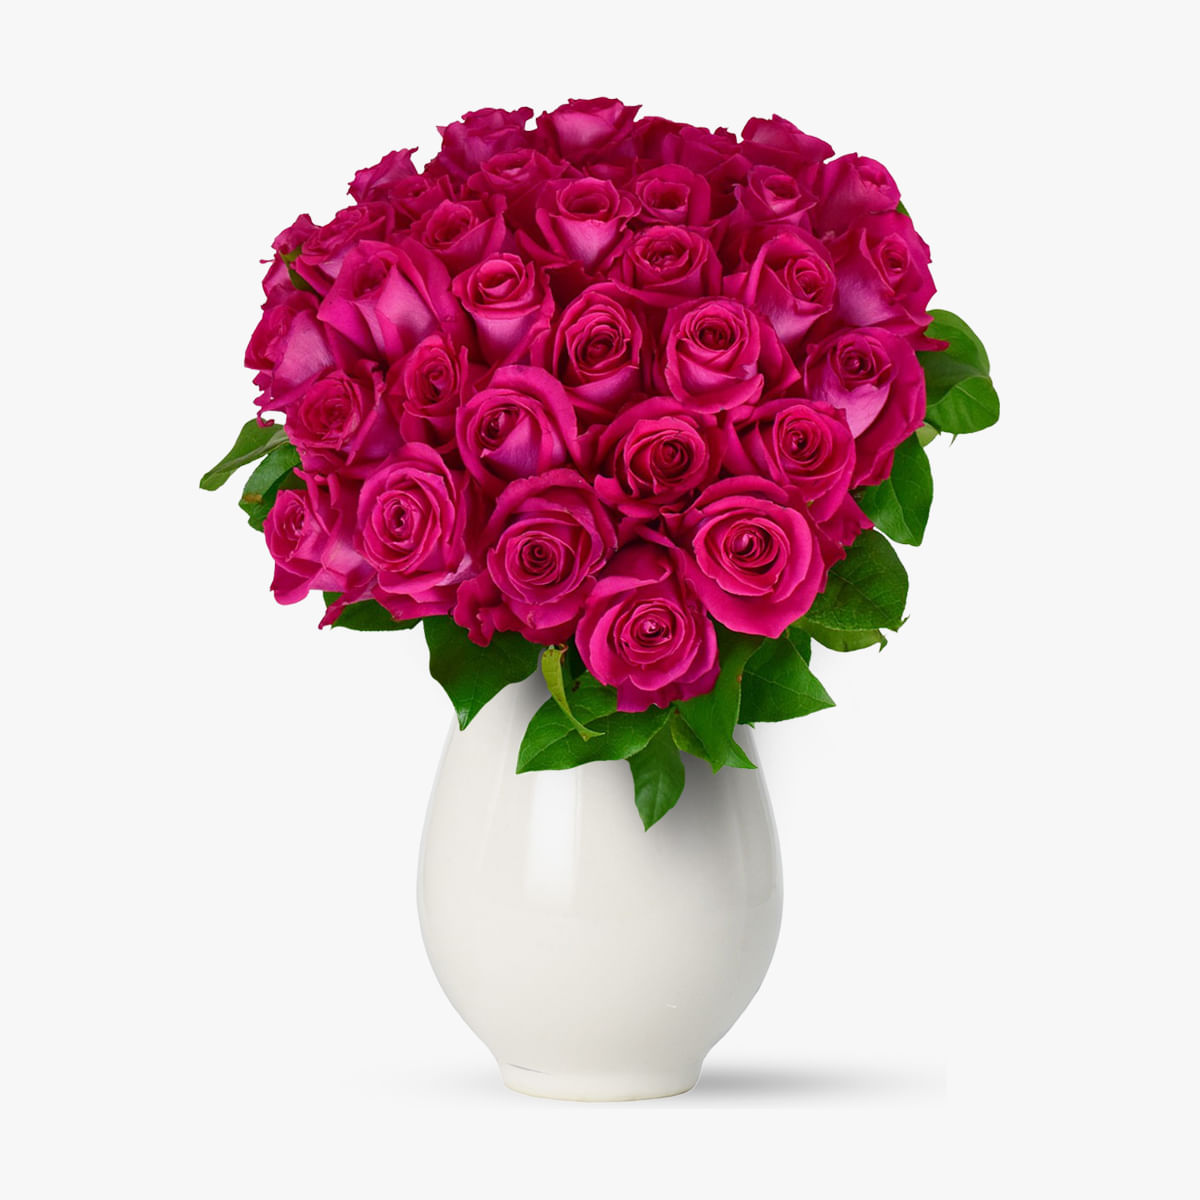 Buchet de 45 trandafiri roz Floria imagine 2022